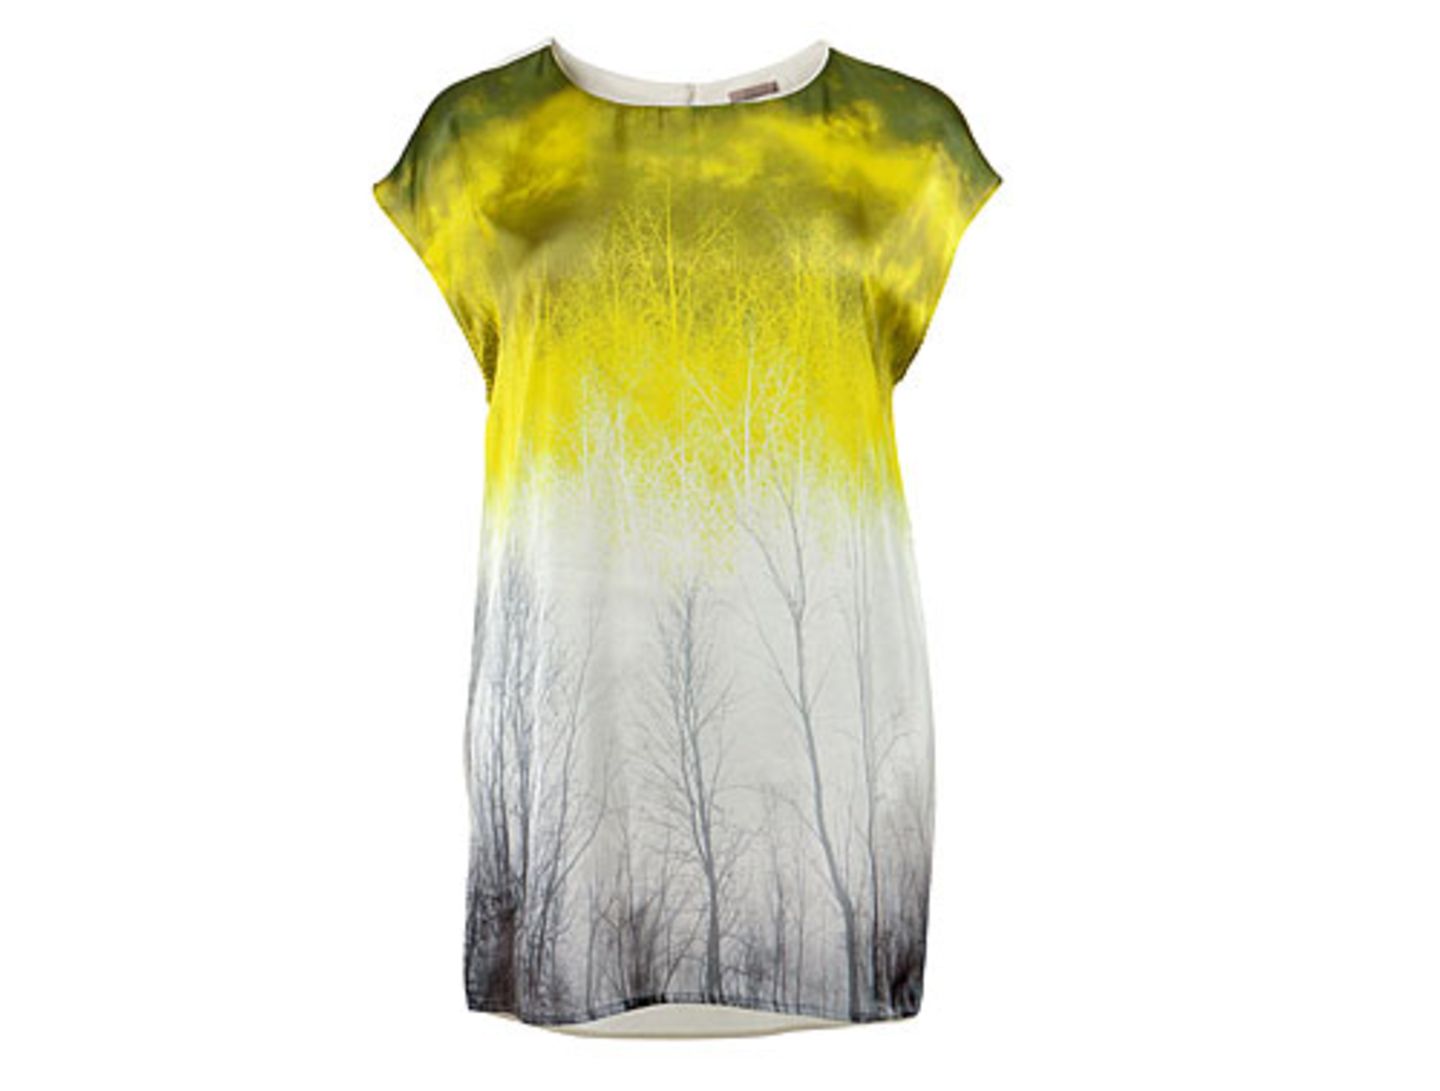 H&M-Shirt Waldprint gelb-grau